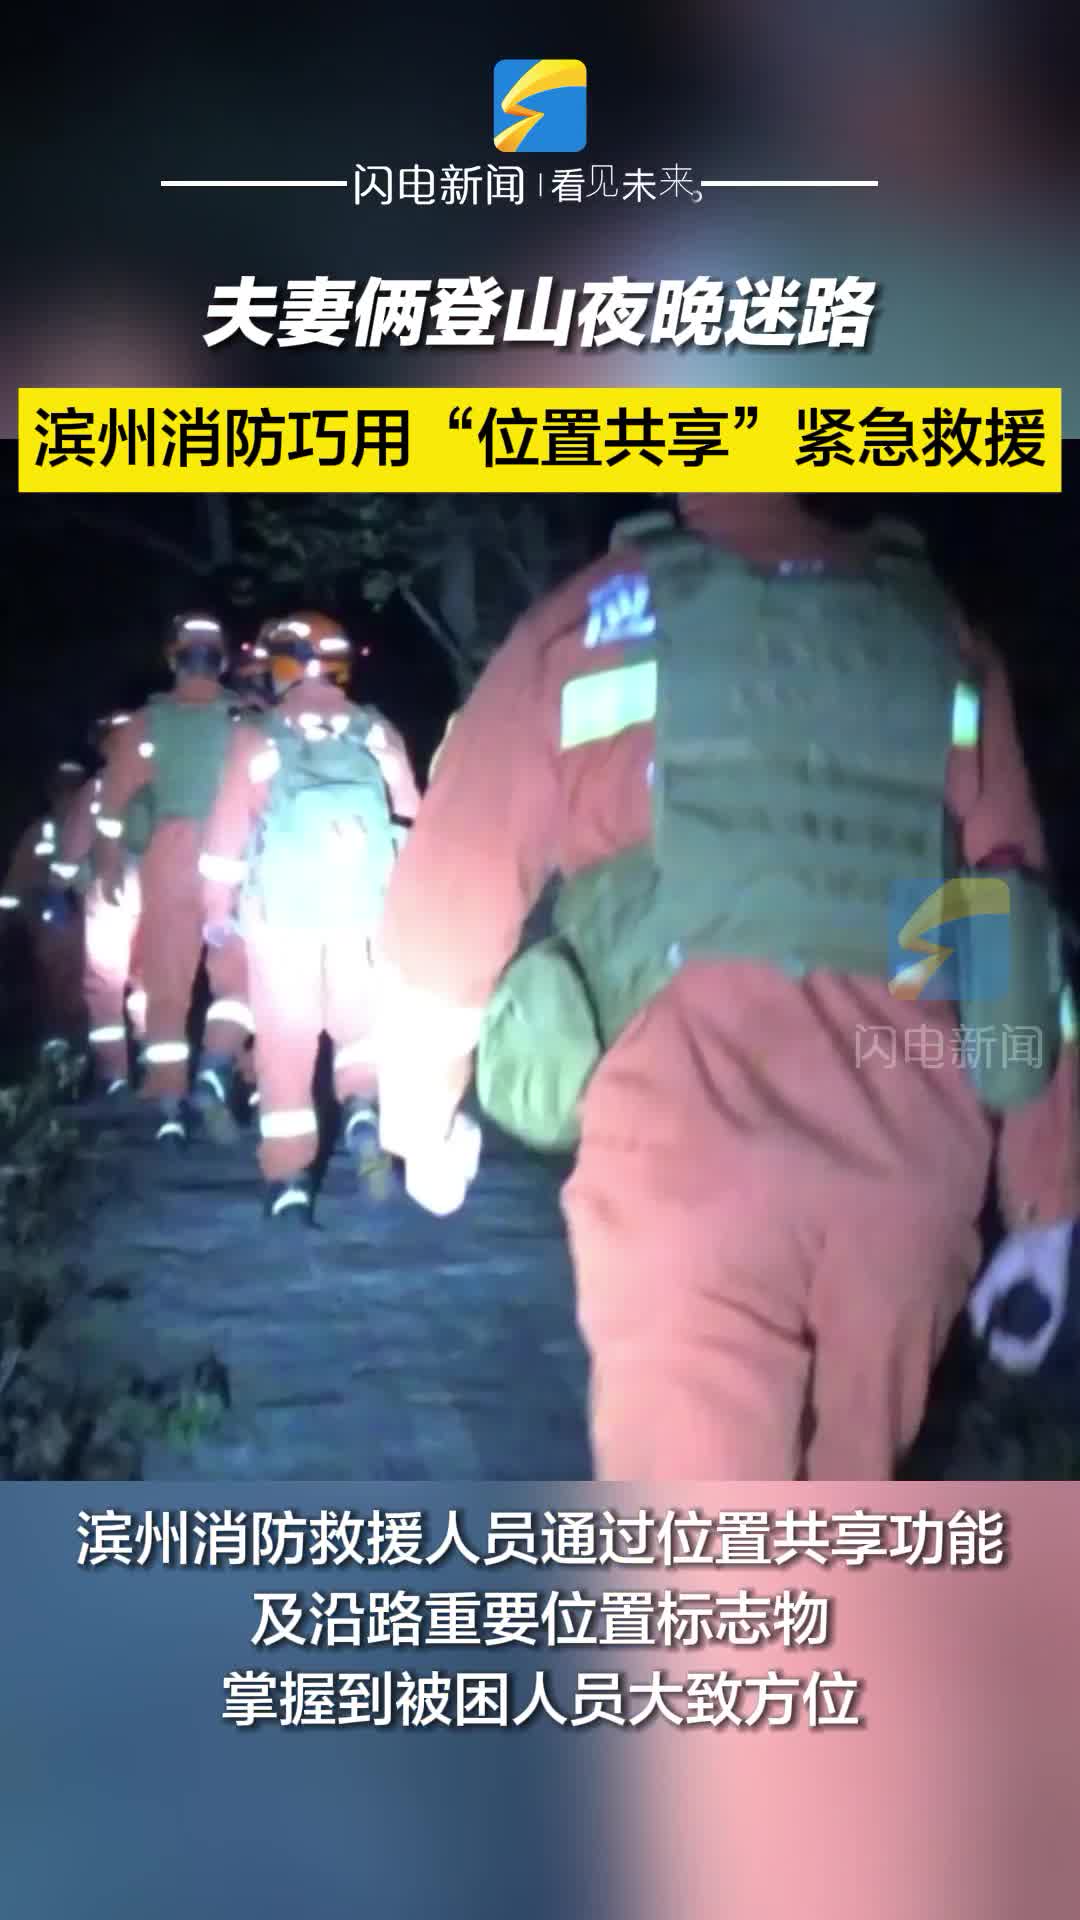 夫妻俩登山夜晚迷路 滨州消防巧用“位置共享”紧急救援